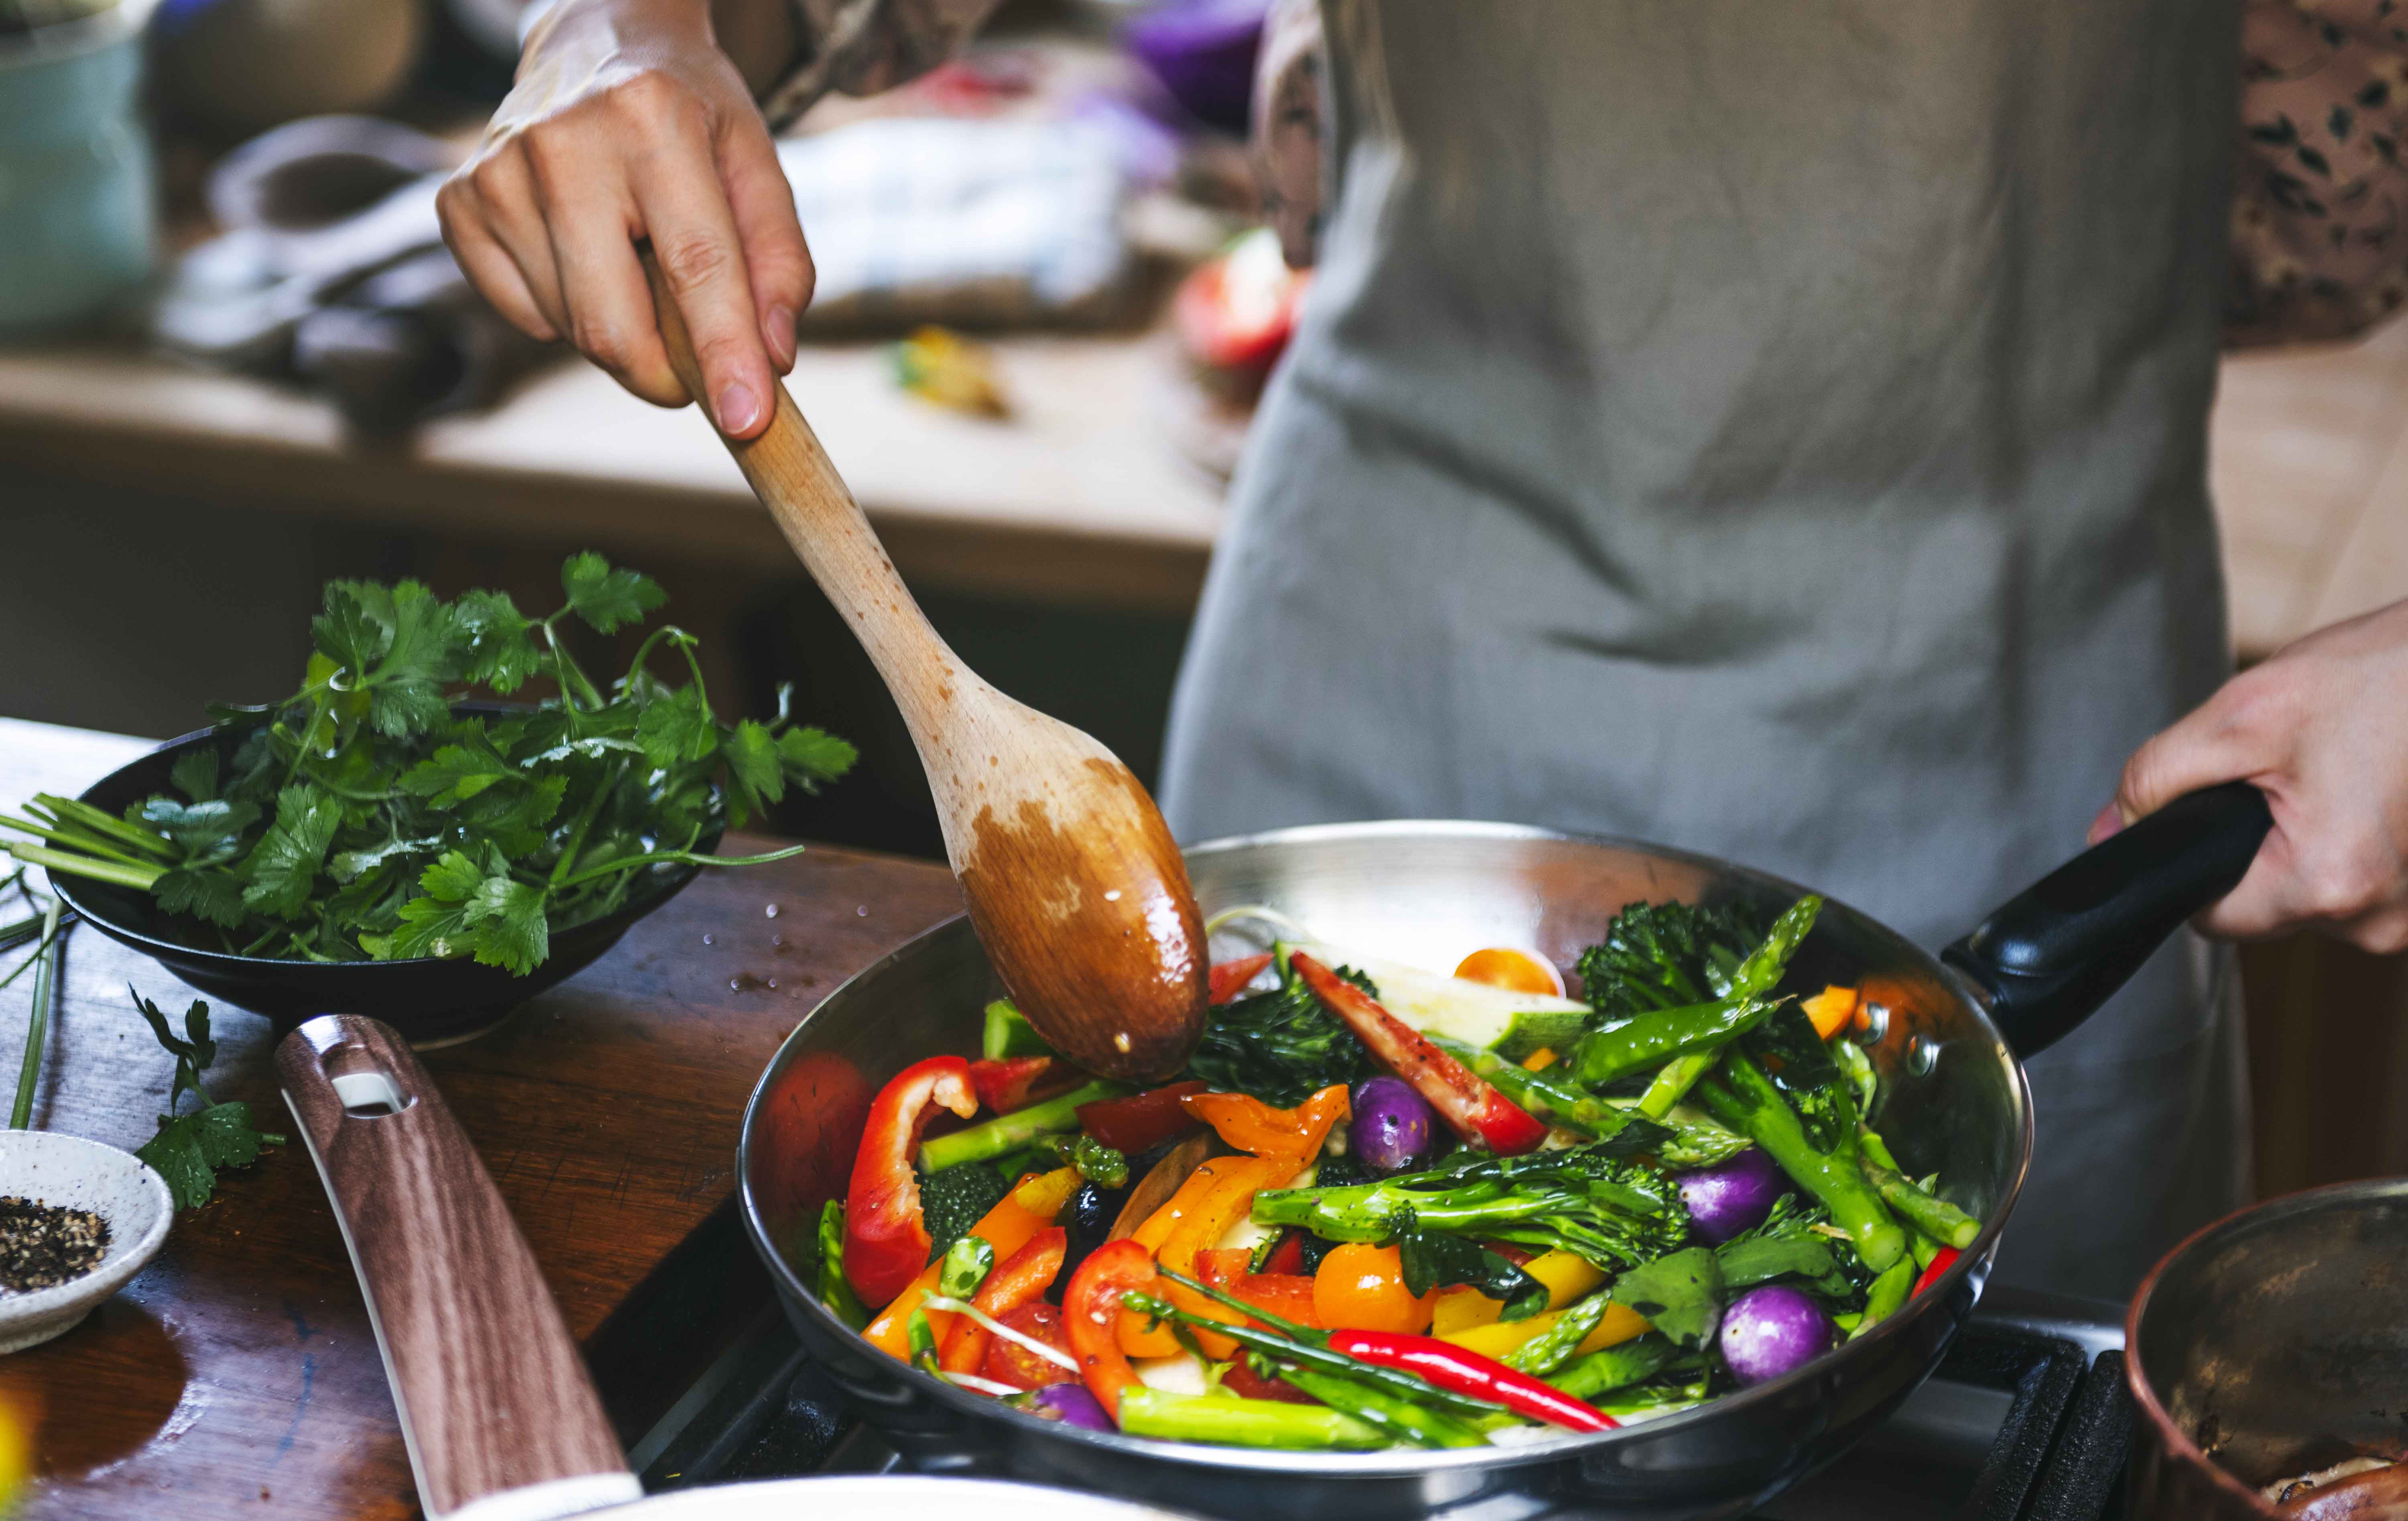 Sword-surgelati-cucinare-le-verdure-surgelate-in-modo-creativo